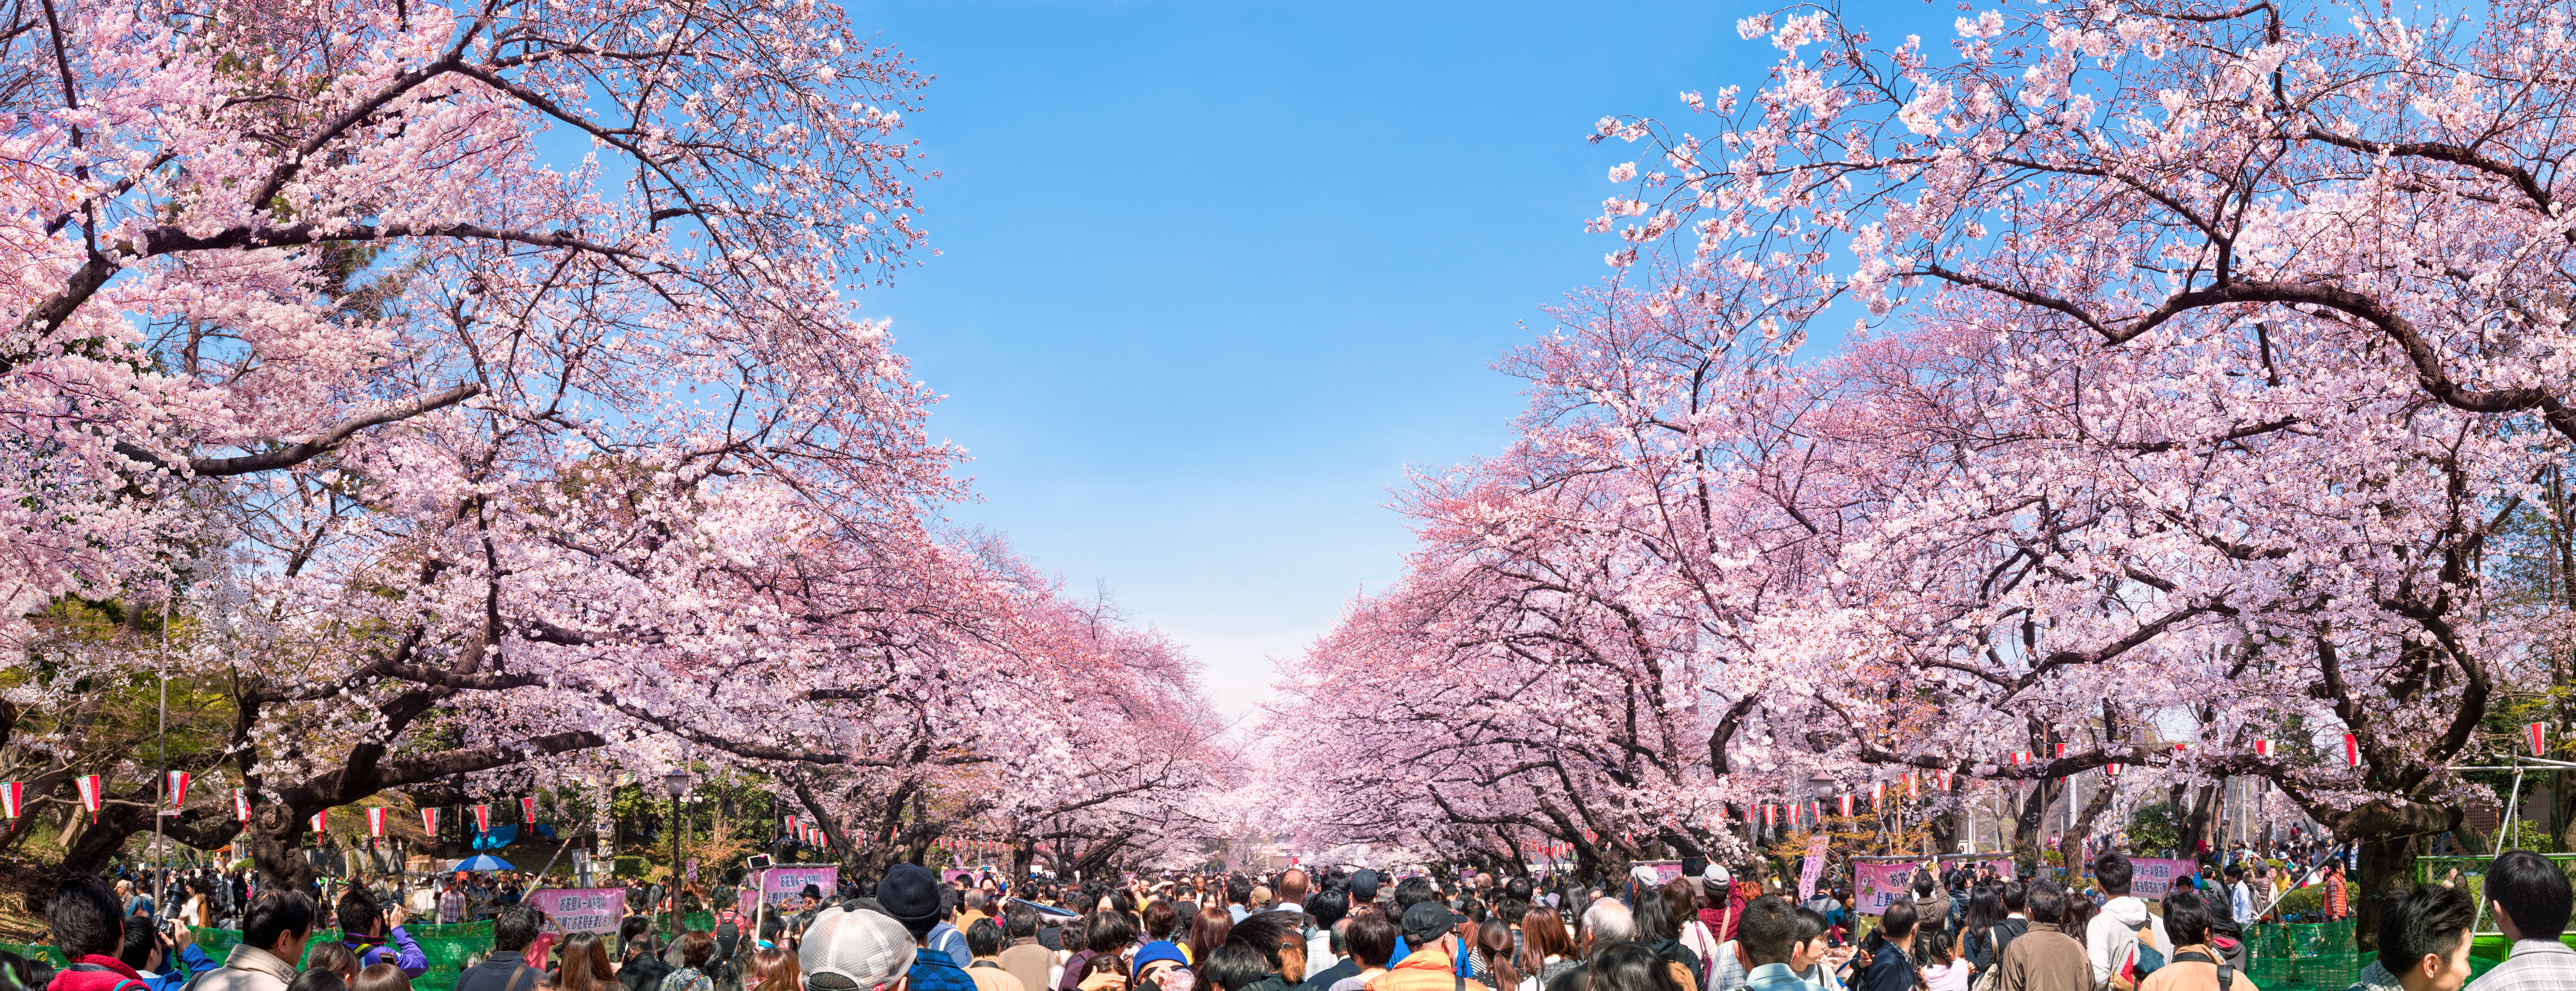 japan blossom festival